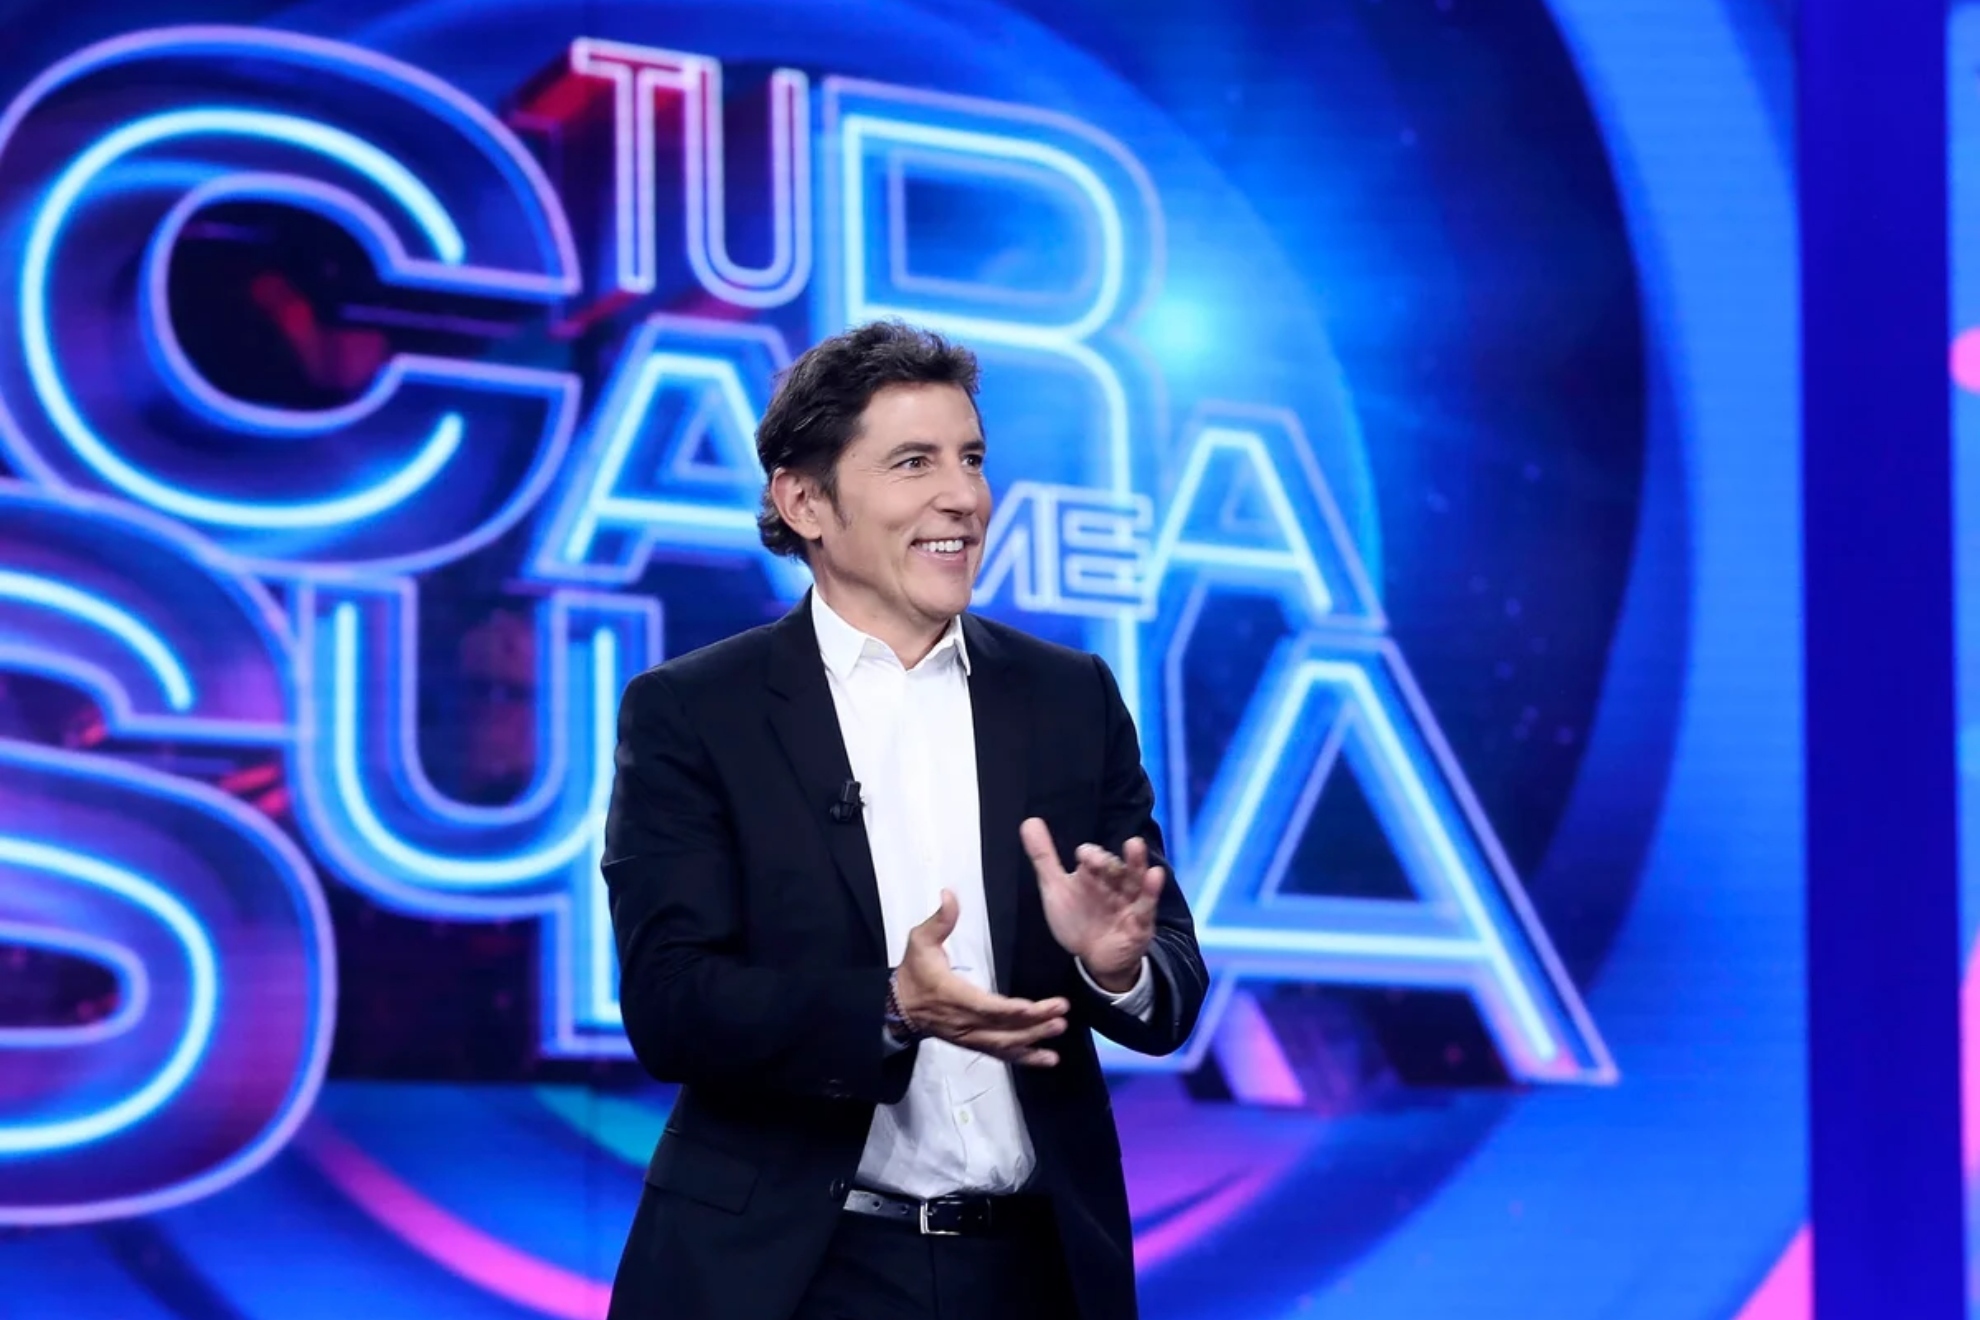 Concursantes de Tu Cara Me Suena: lista completa de famosos y participantes del programa de Antena 3